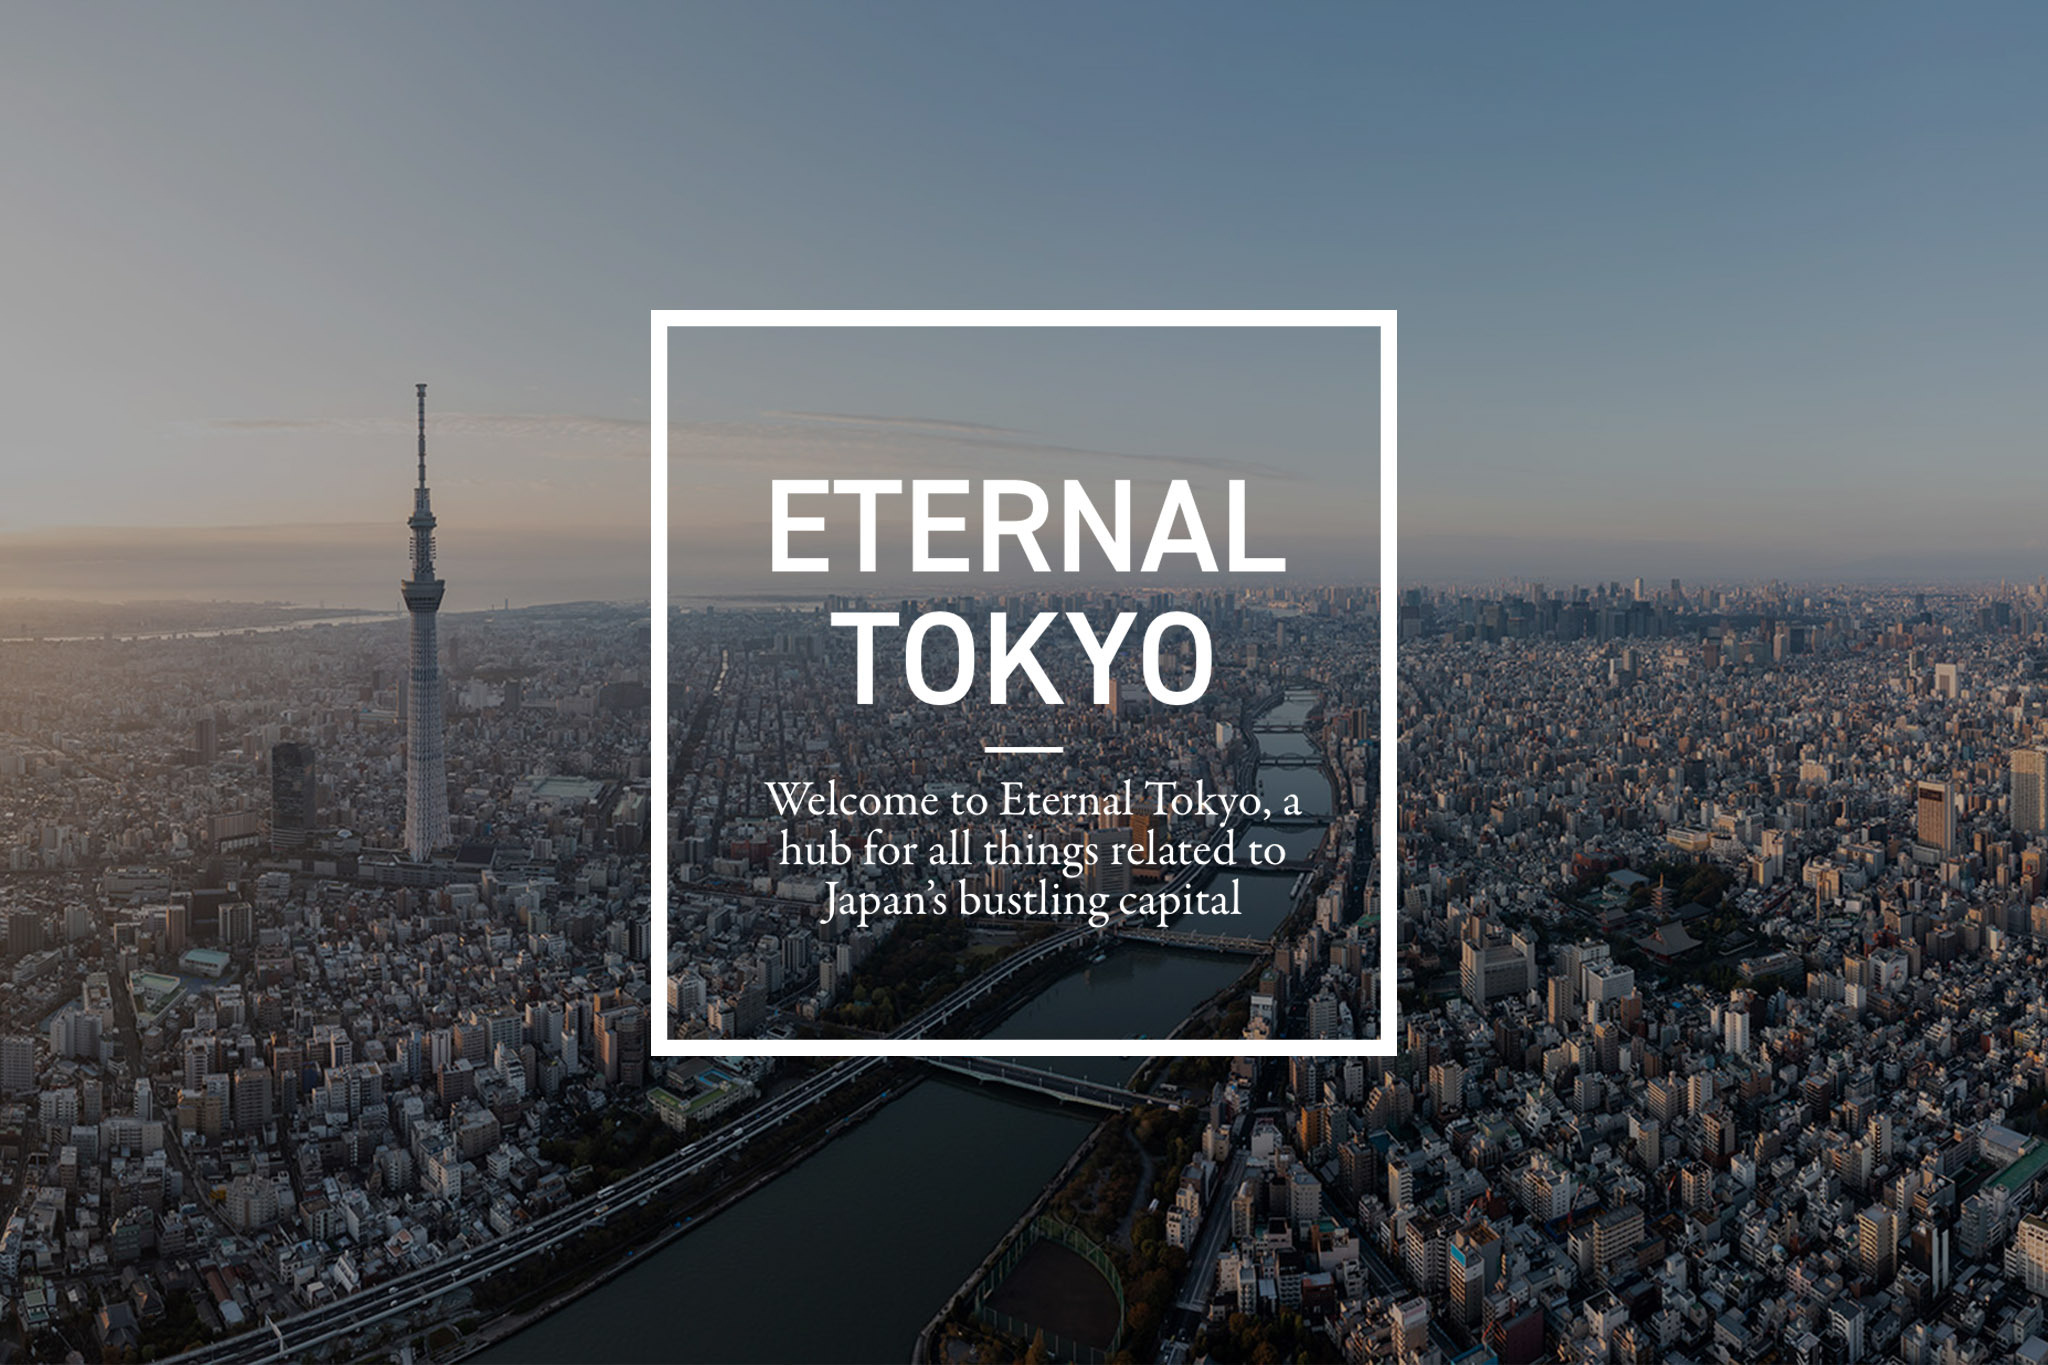 「Tokyo Weekender」×「三井ショッピングパーク アーバン・RAYARD」   日本在住・訪日外国人向けの情報発信として、『ETERNAL TOKYO』をリリース